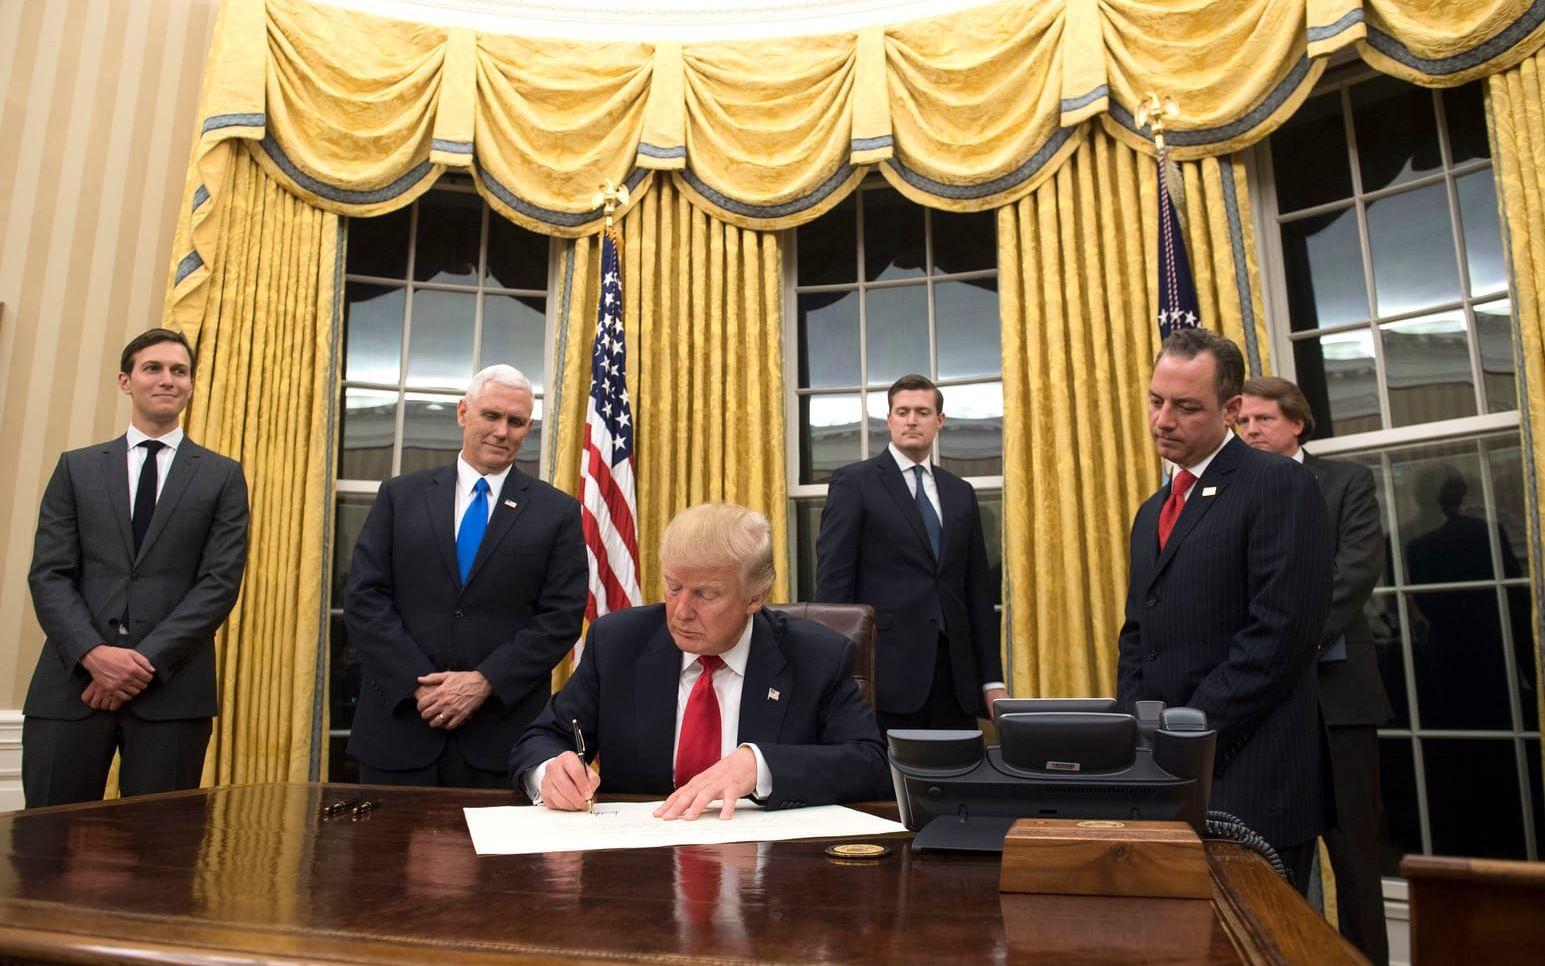 De nya gardinerna är kanske den tydligaste förändringen i Trumps Ovala kontor. Det är vida känt att The Donald har en förkärlek för guld och kanske är det detta som inspirerat till den gyllene gardinerna. Foto: Stella